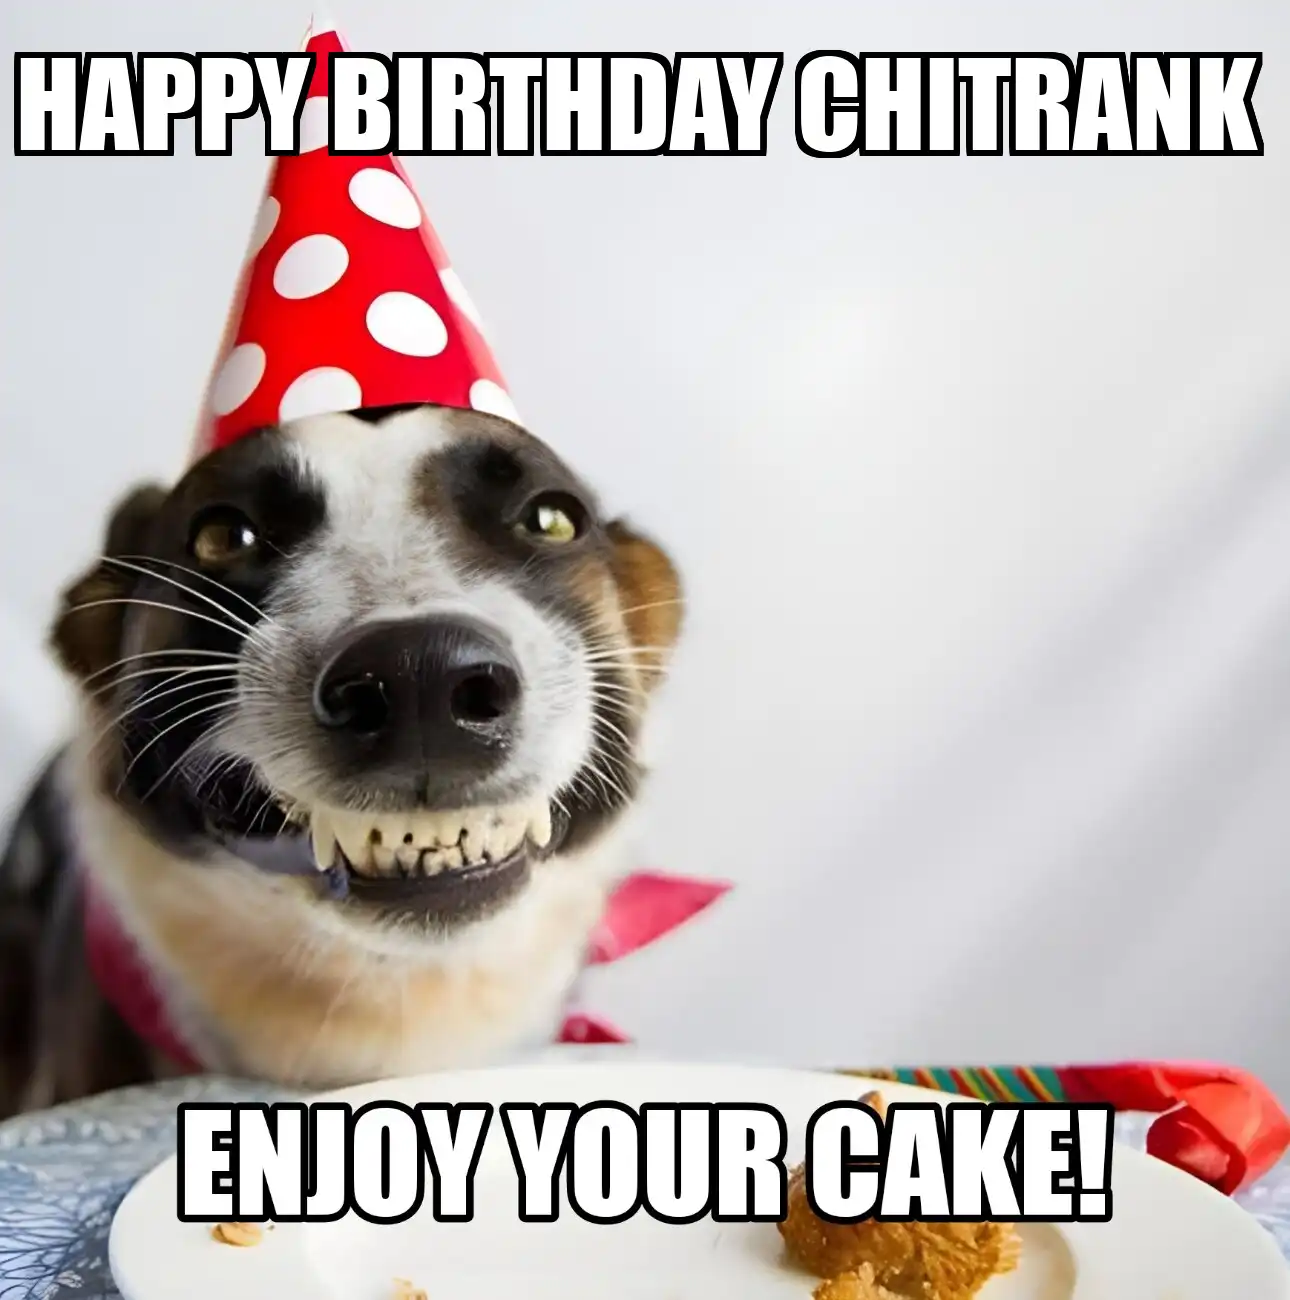 Happy Birthday Chitrank Enjoy Your Cake Dog Meme